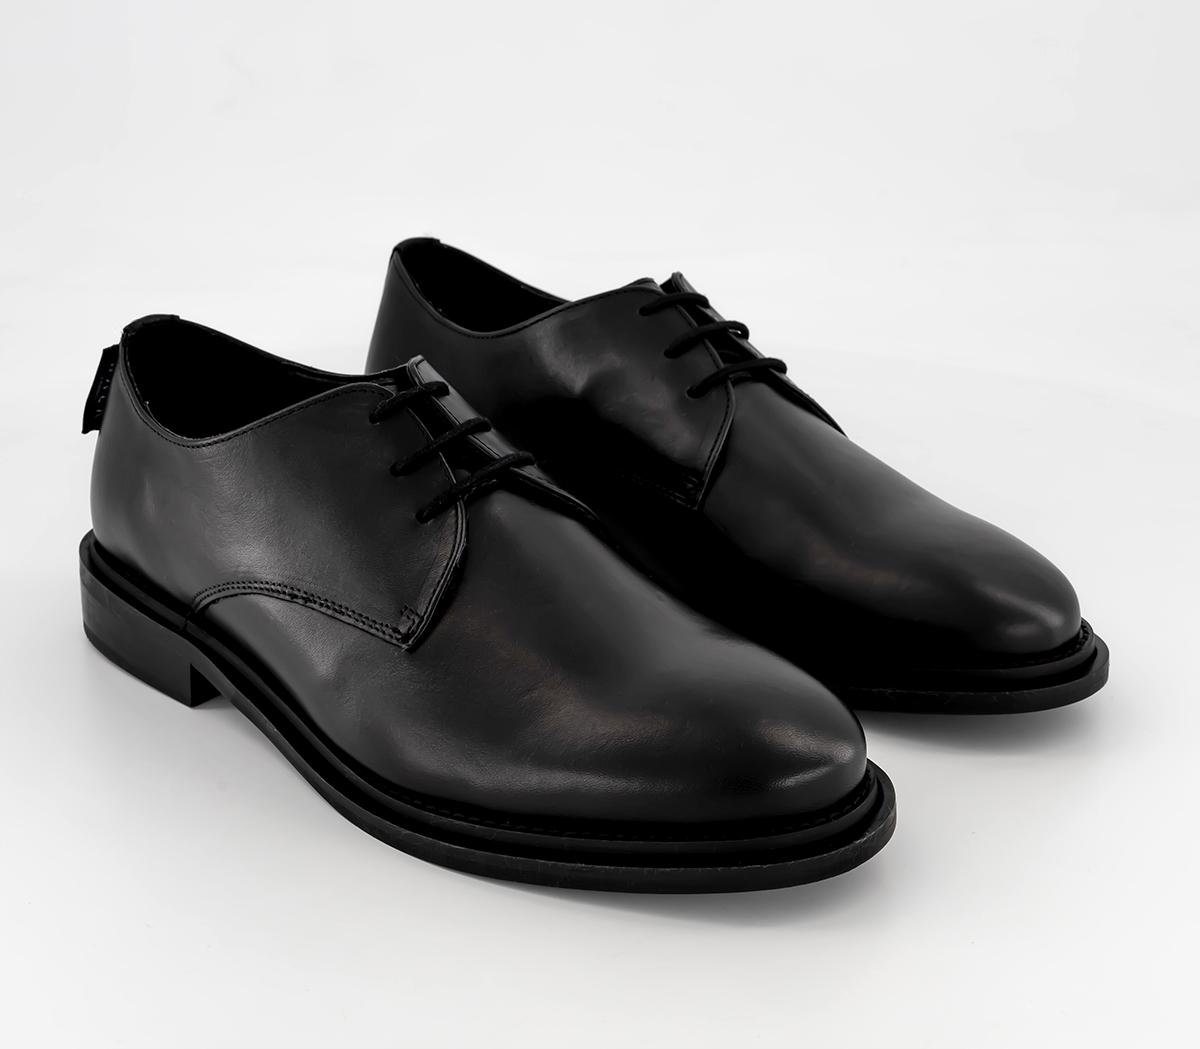 Walk London Antonio Derby Shoes Black - Men’s Boots